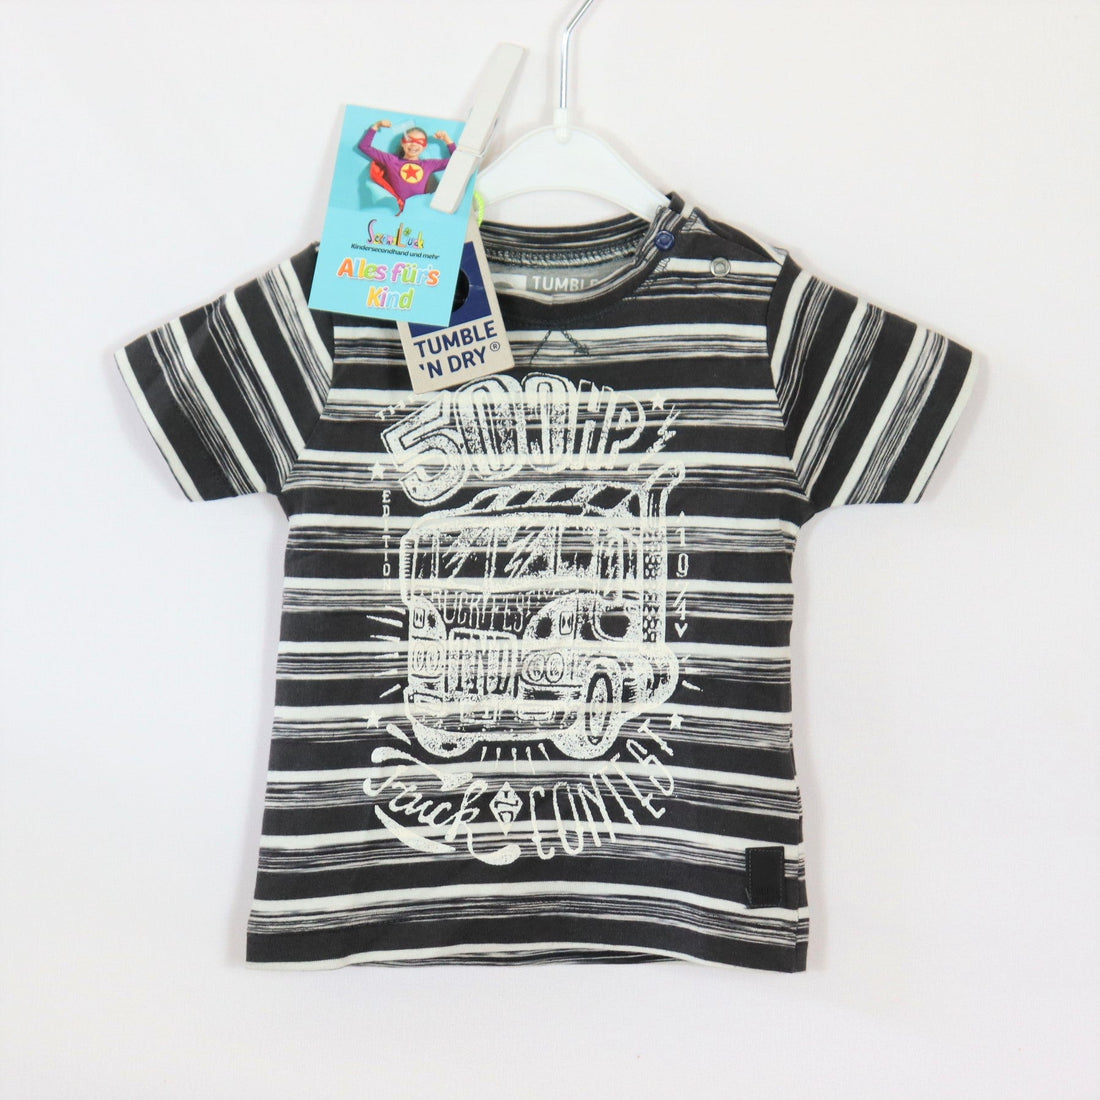 T-Shirt - Tumble`n Dry - 62 - schwarz/weiß - bedruckt - geringelt - Boy - sehr guter Zustand